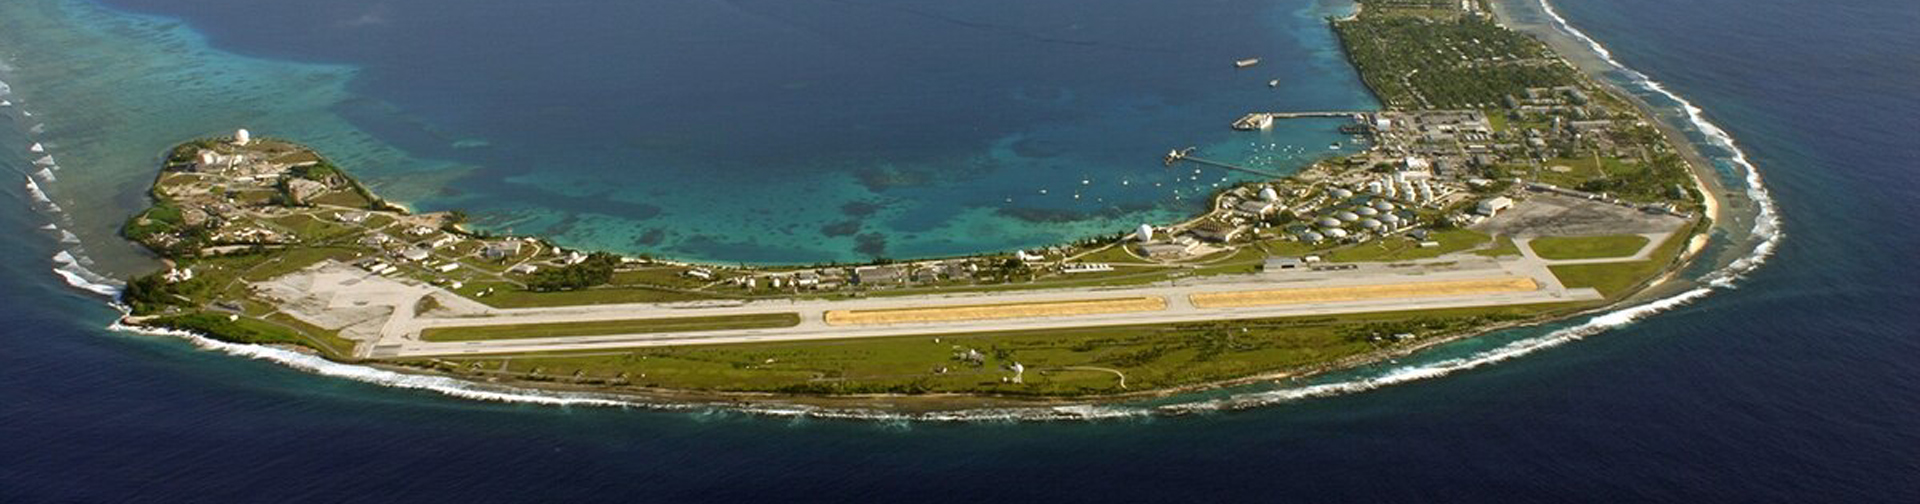 Vue aérienne de l'atoll de Kwajalein